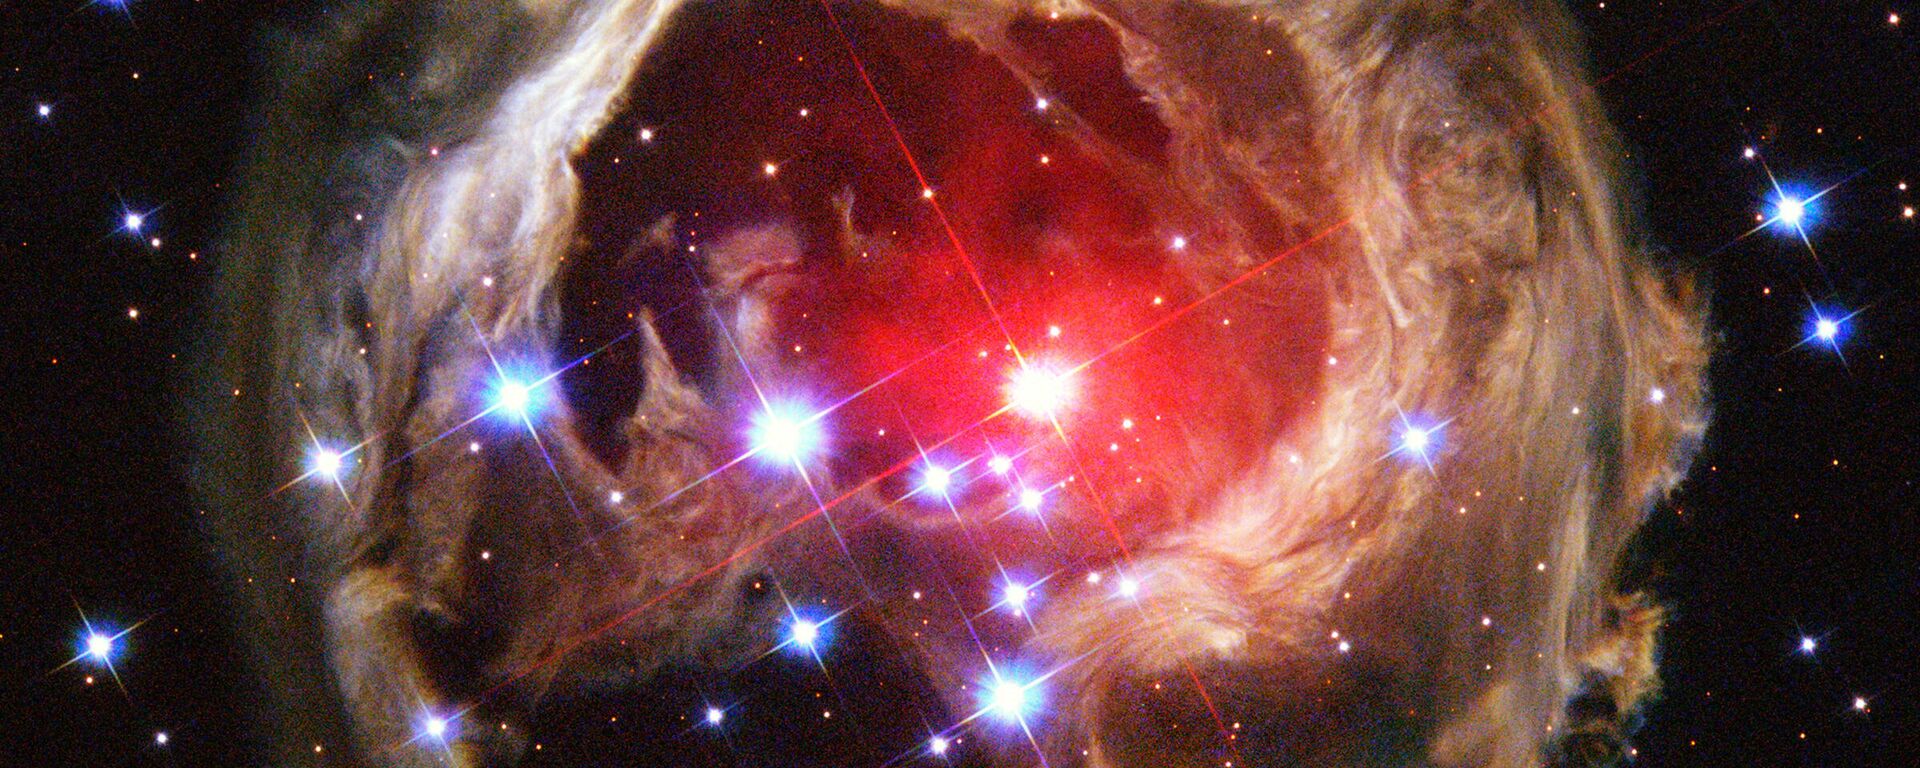 Šviesos aidas apšviečia dulkes aplink milžinišką žvaigždę V838 Monocerotis - Sputnik Lietuva, 1920, 07.10.2021